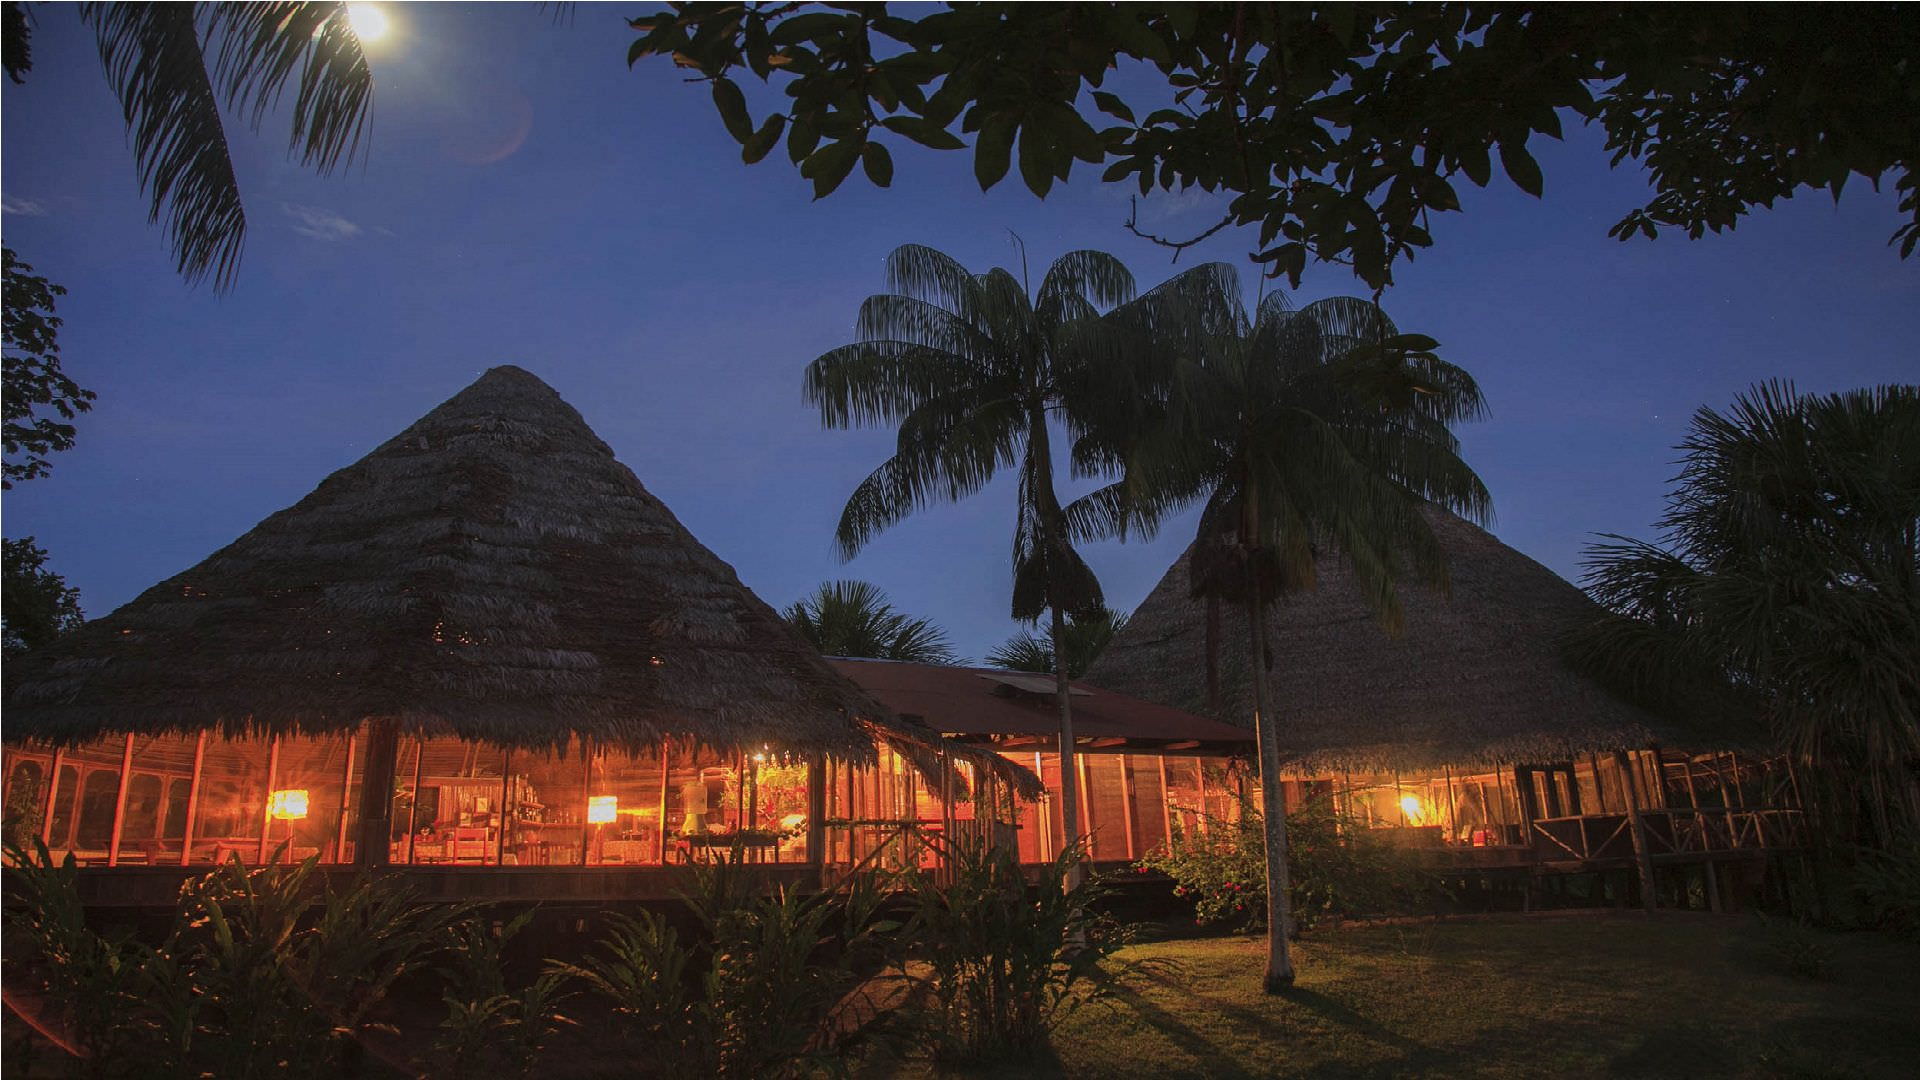 Pacaya Samiria Amazon Lodge